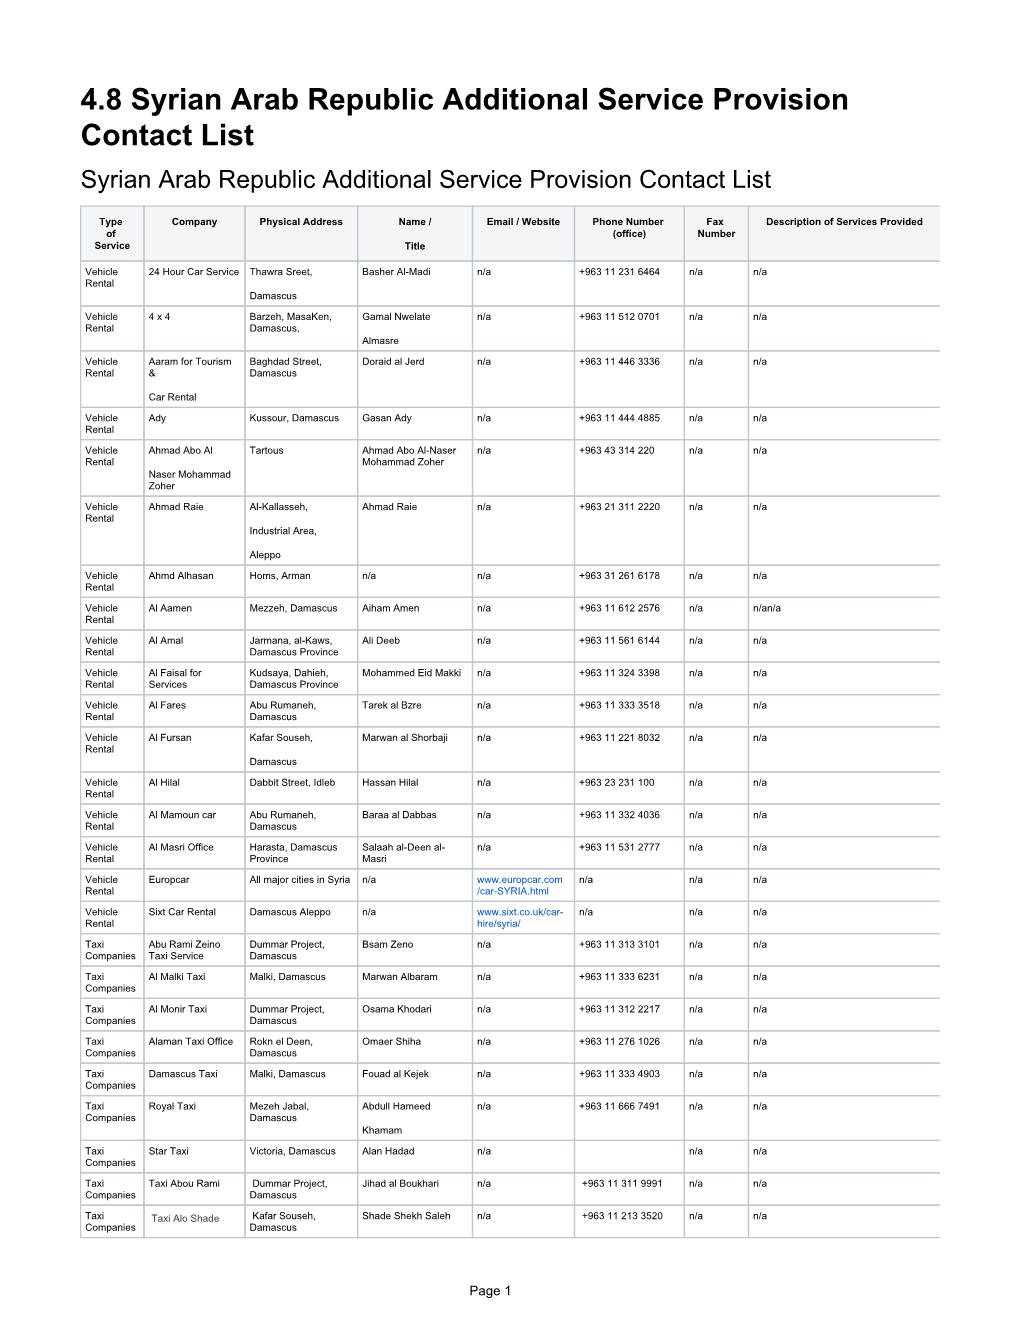 4.8 Syrian Arab Republic Additional Service Provision Contact List Syrian Arab Republic Additional Service Provision Contact List